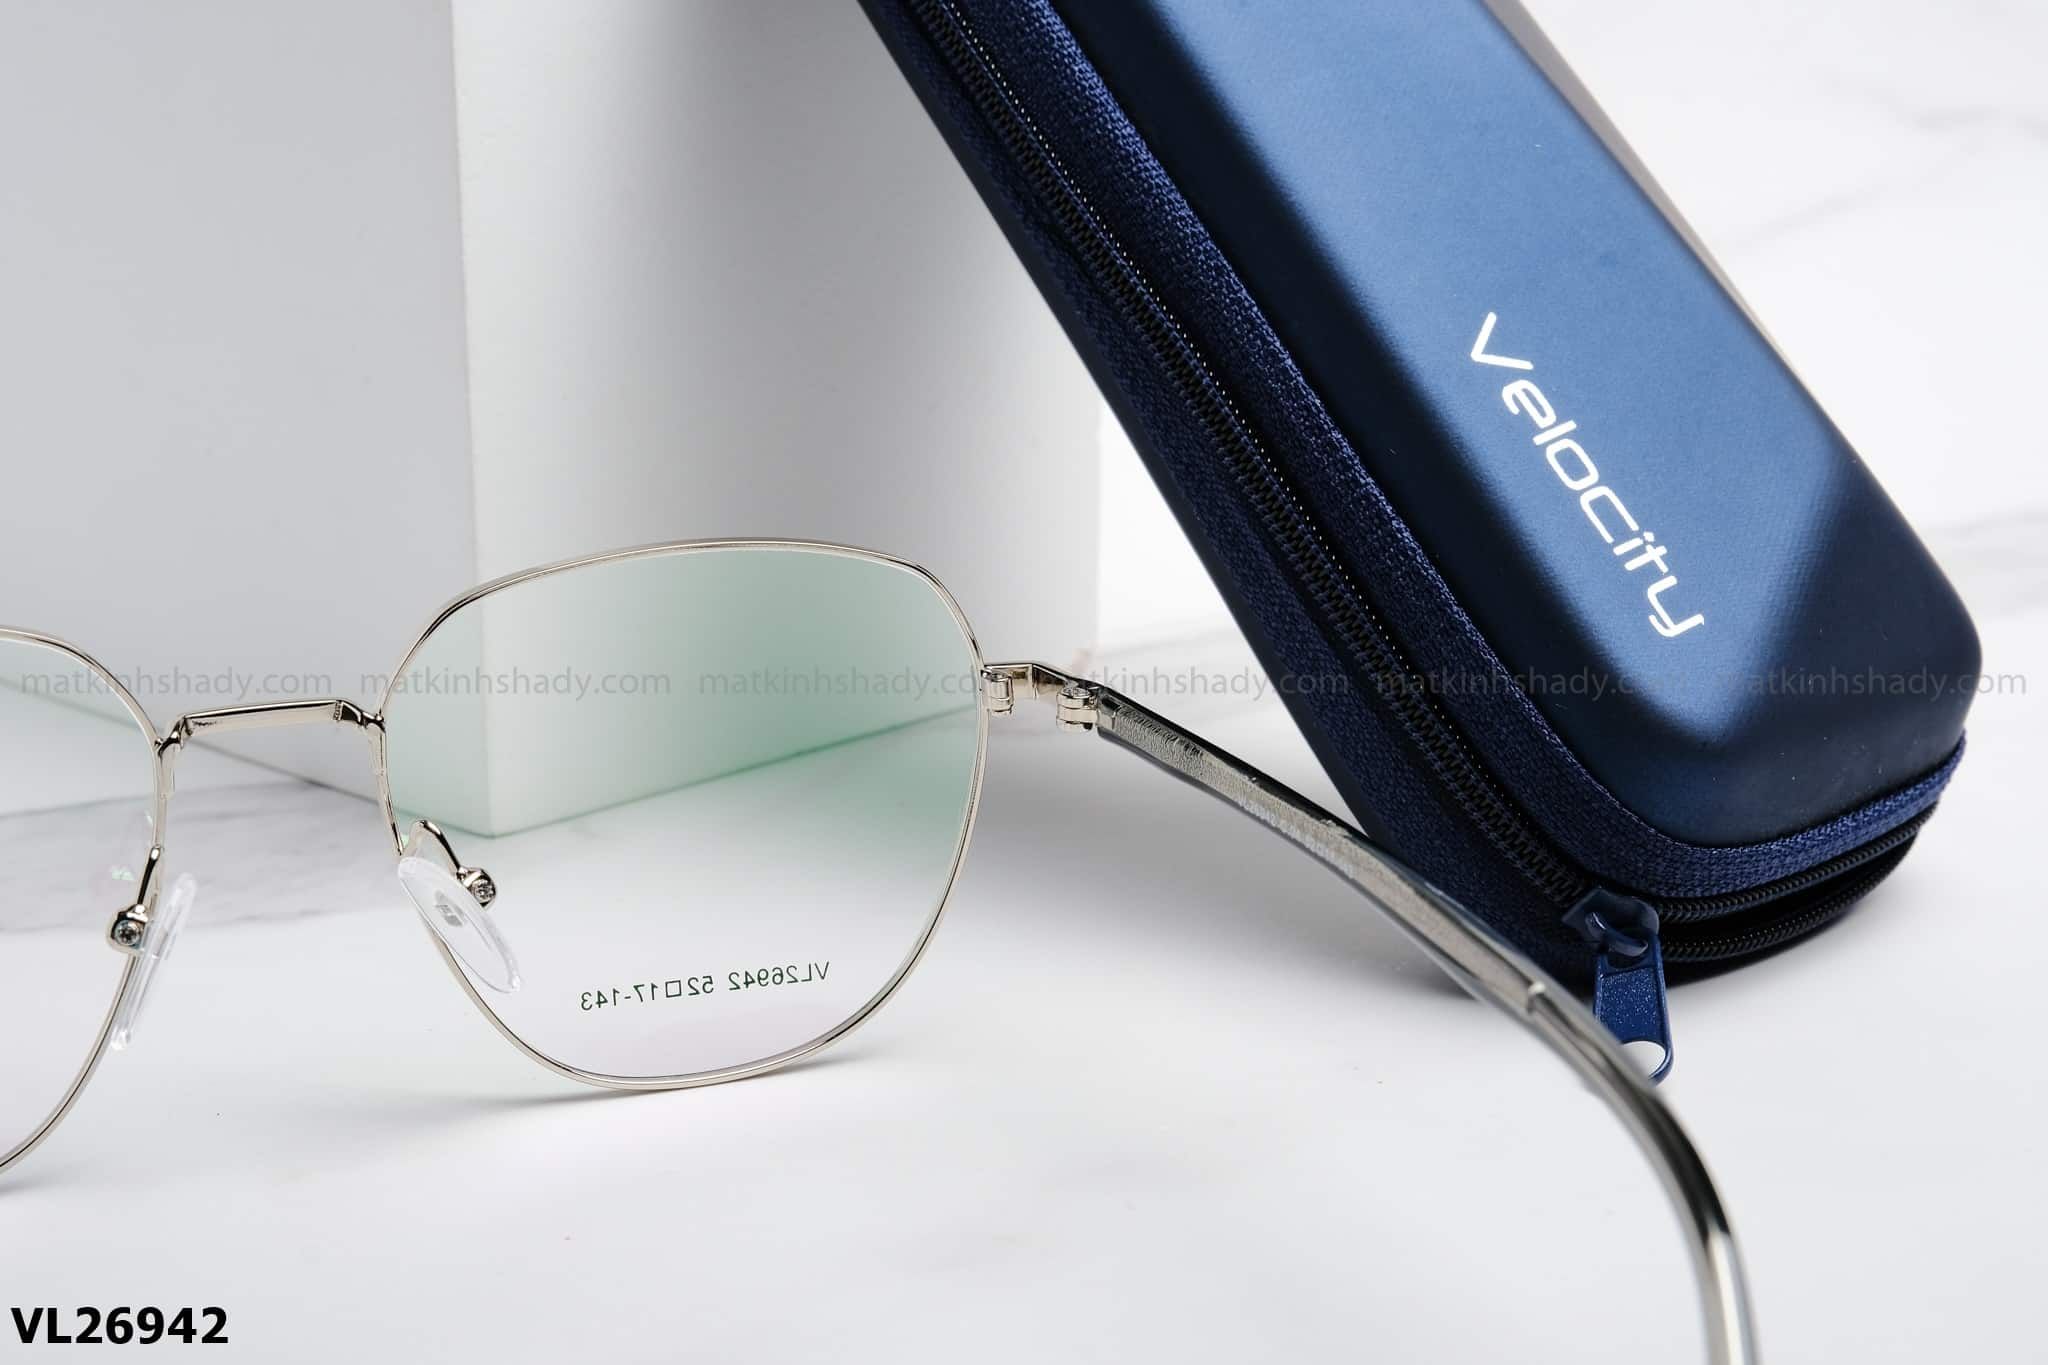  Velocity Eyewear - Glasses - VL26942 